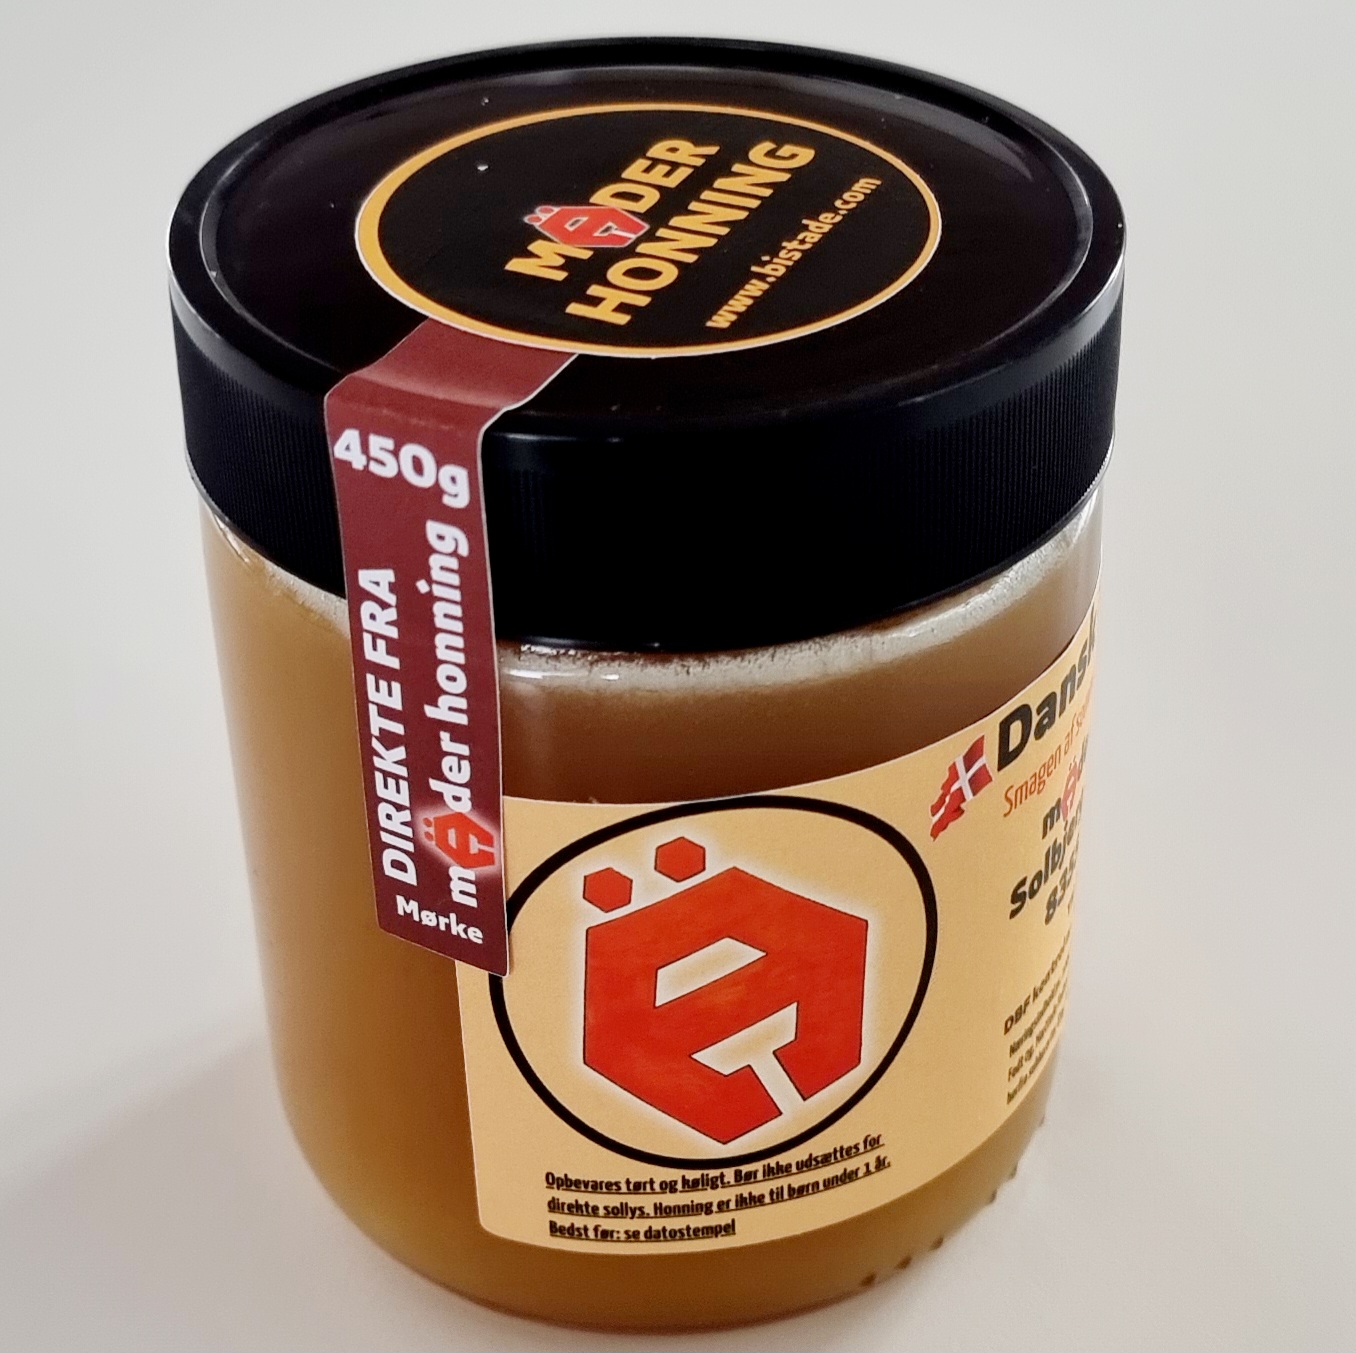 Dansk honning avlet i egen bigård. Mäder Honning 450g Skovhonning fra Mørke